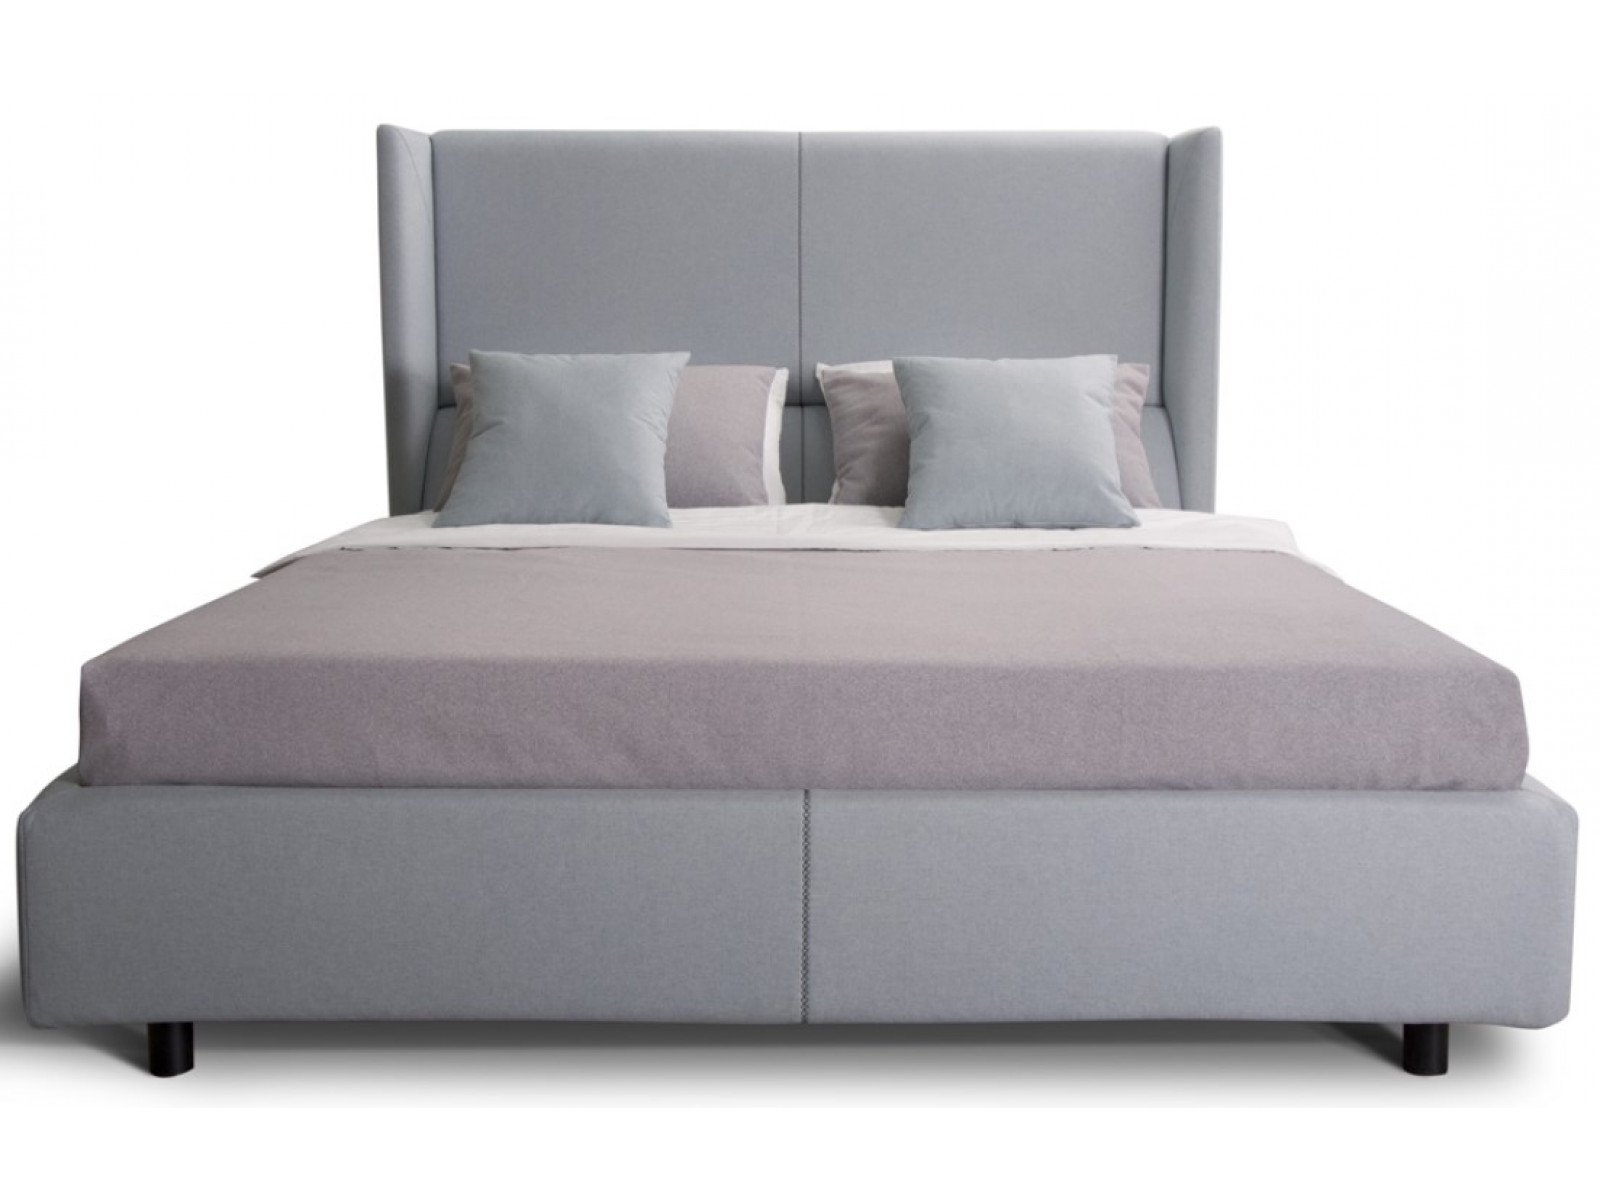 Кровать с подъемным механизмом 200х200 Барселона купить по выгодной цене в интернет-магазине MiaSofia